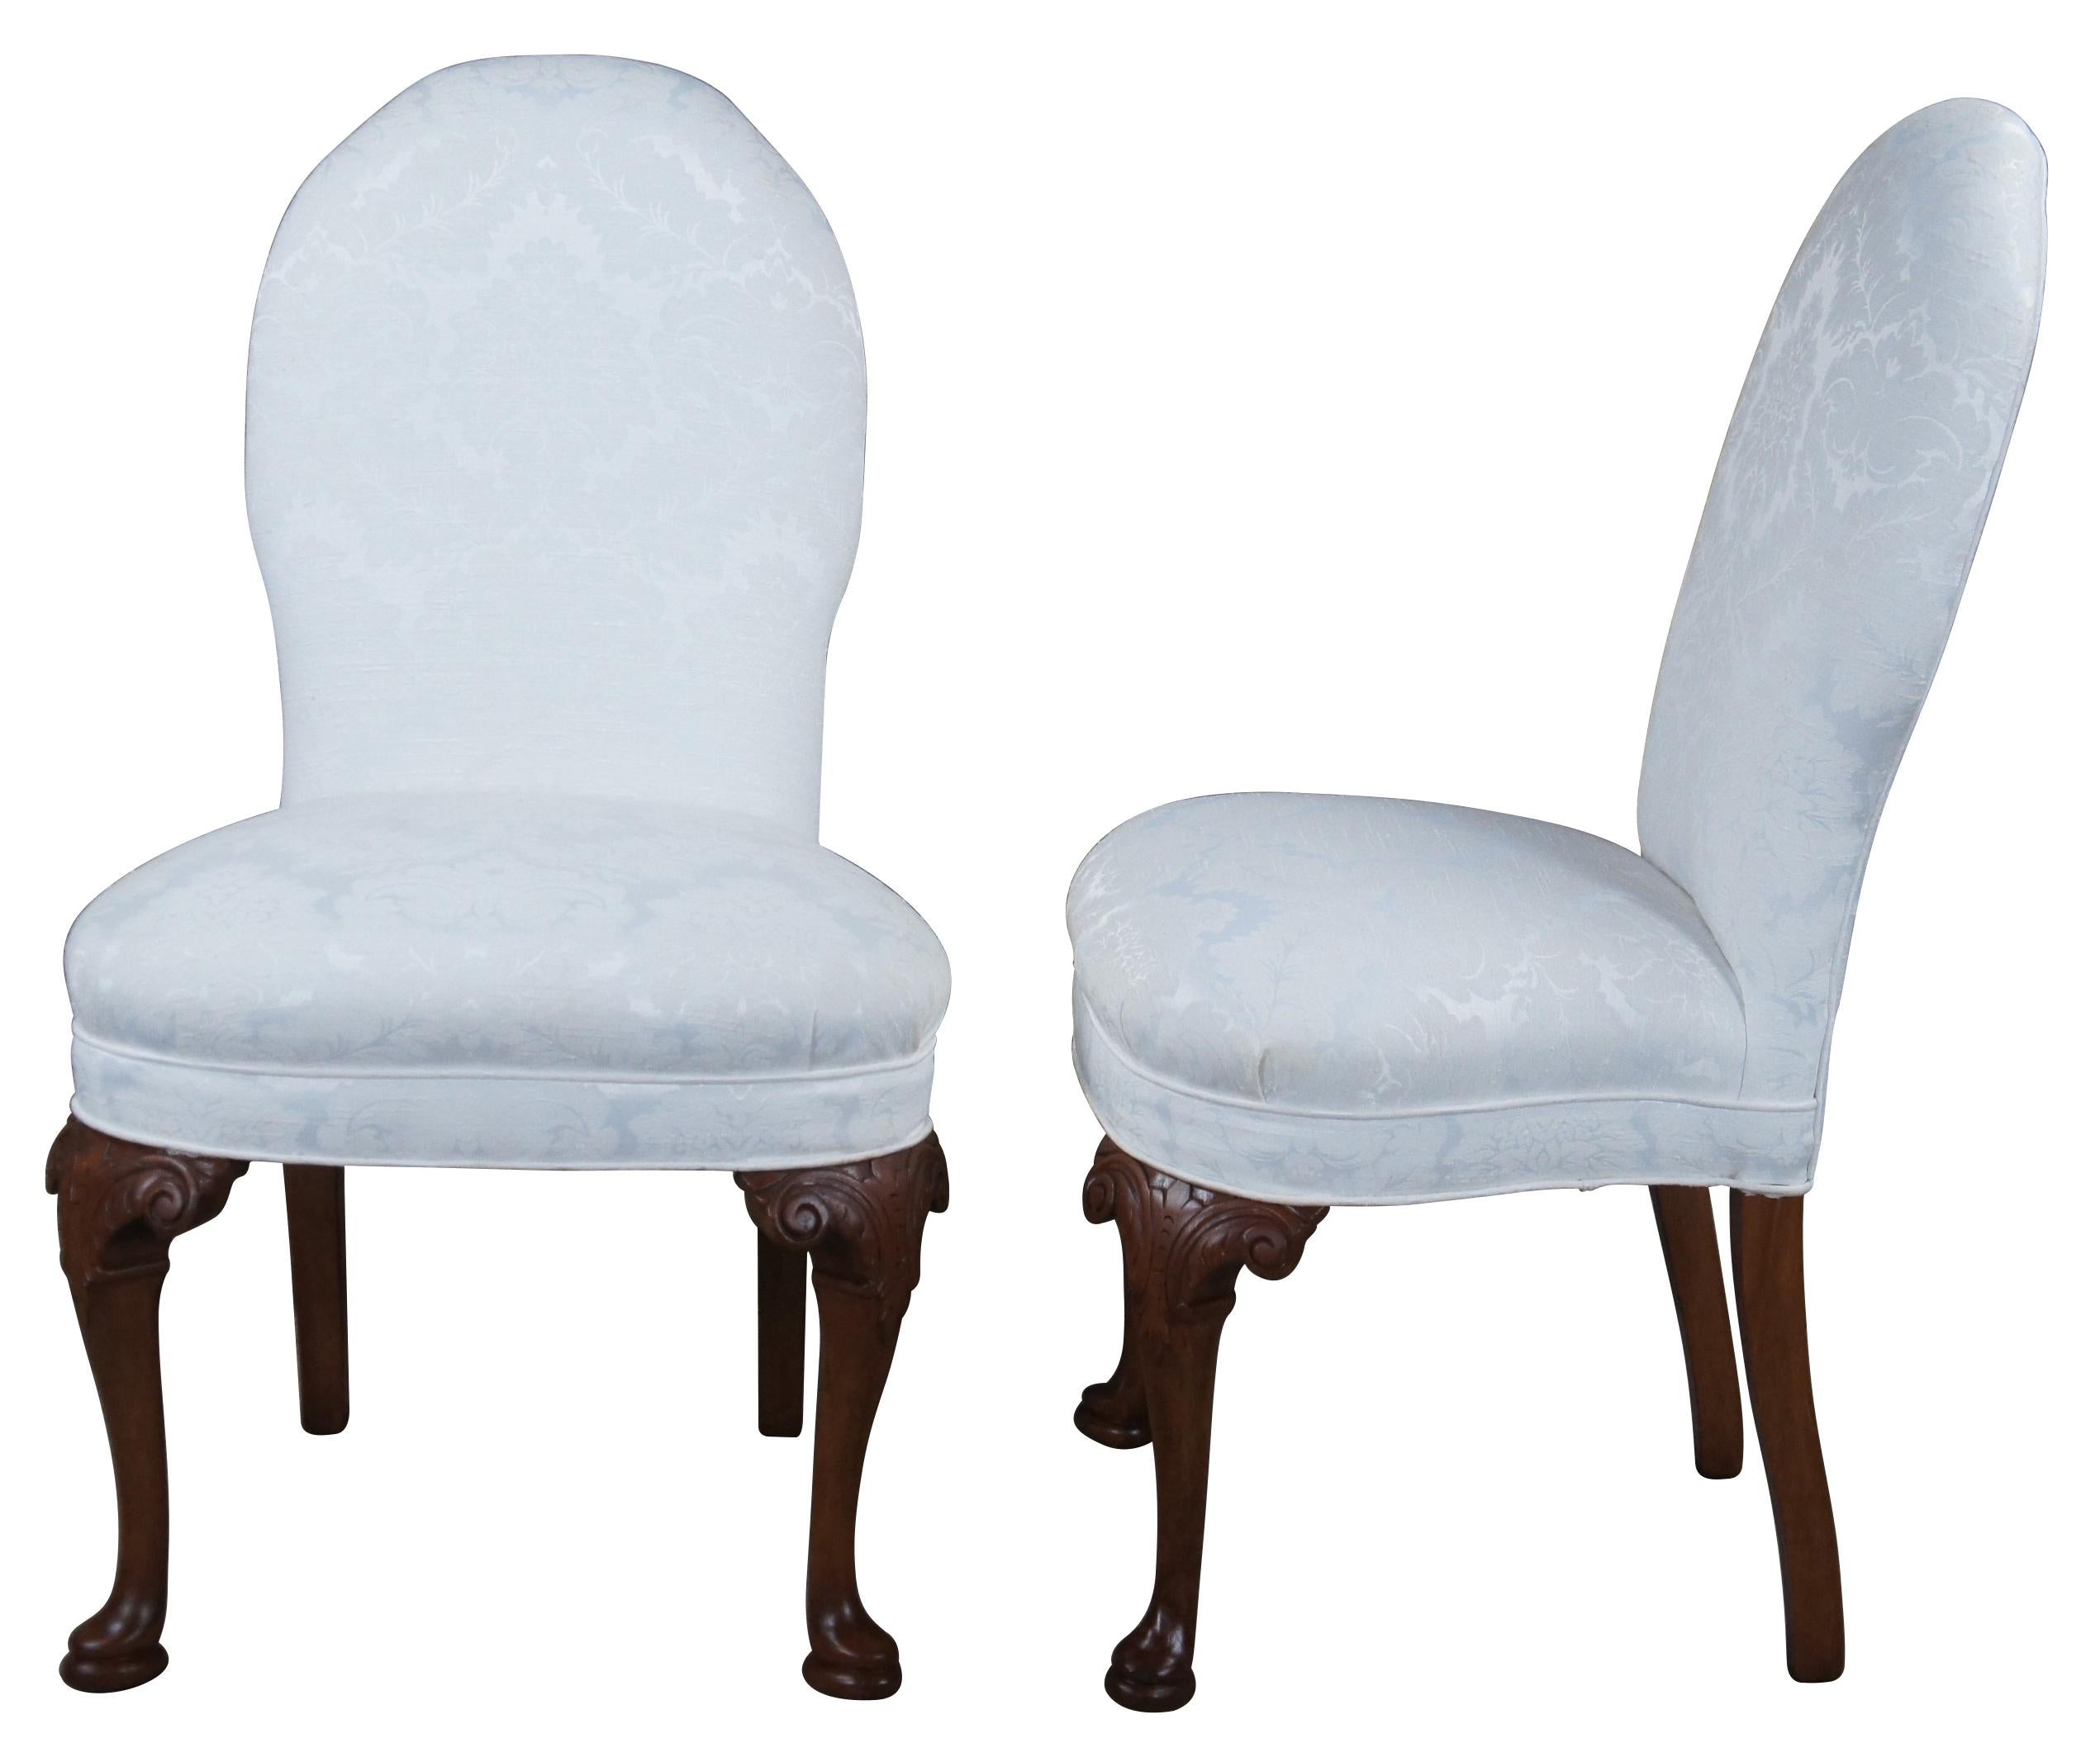 Magnifique paire de chaises d'appoint de style Queen Anne.  Rappelant les chaises classiques à dossier en cuillère de l'époque victorienne.  Fabriqué en acajou, les genoux sont sculptés d'acanthes et de volutes qui mènent à des pieds cabriole et à